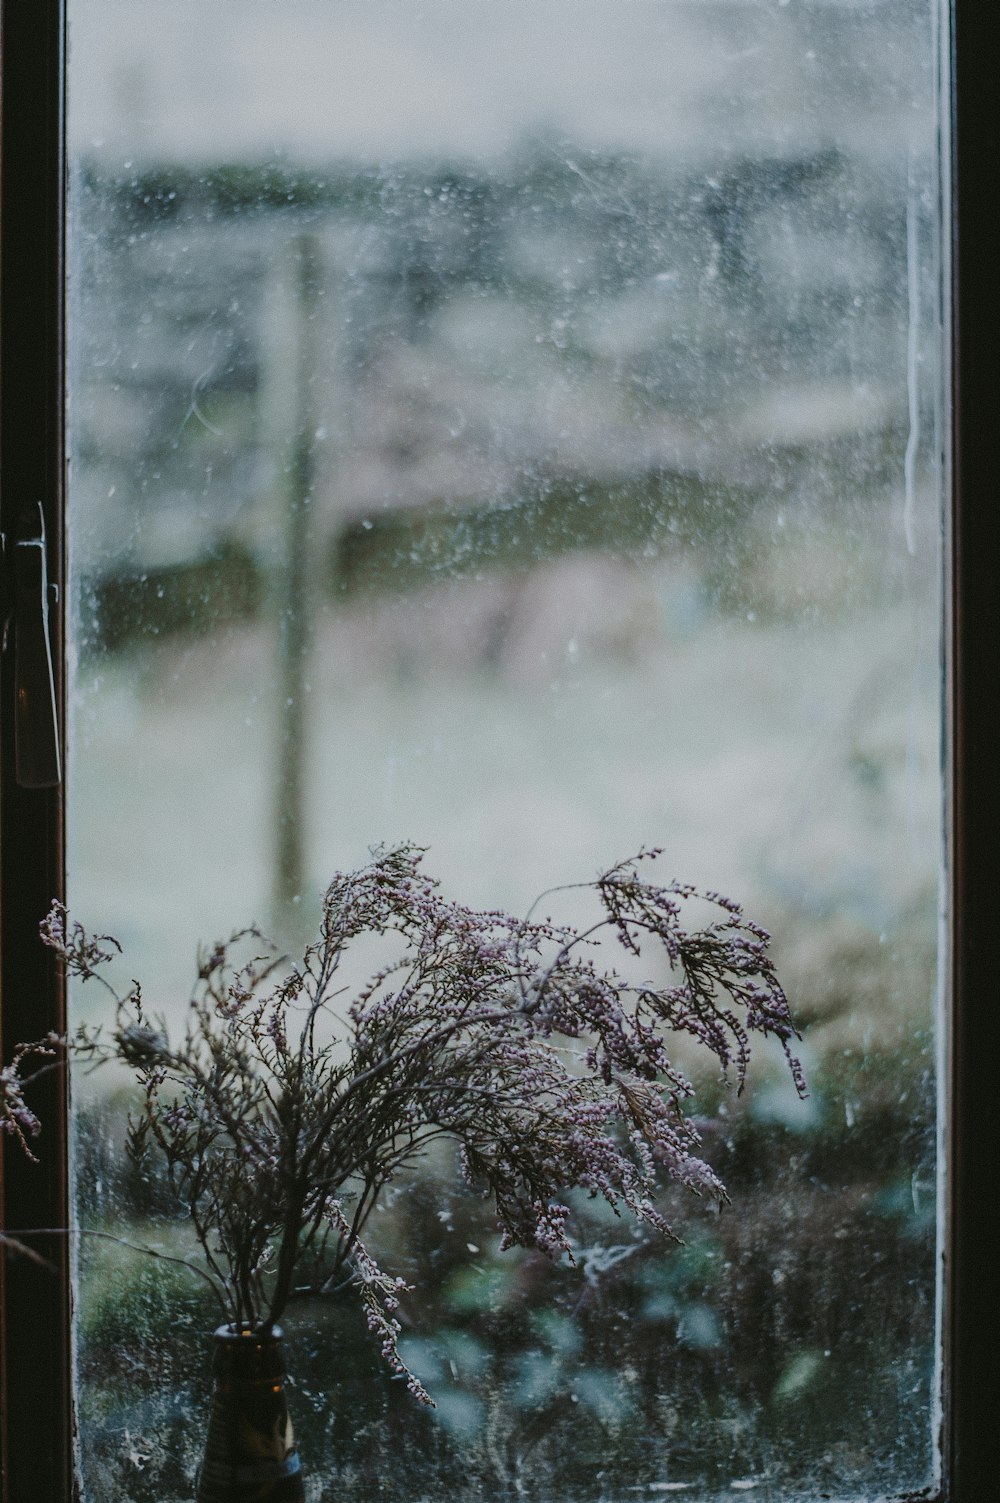 foglie appassite nel vaso accanto alla finestra di vetro